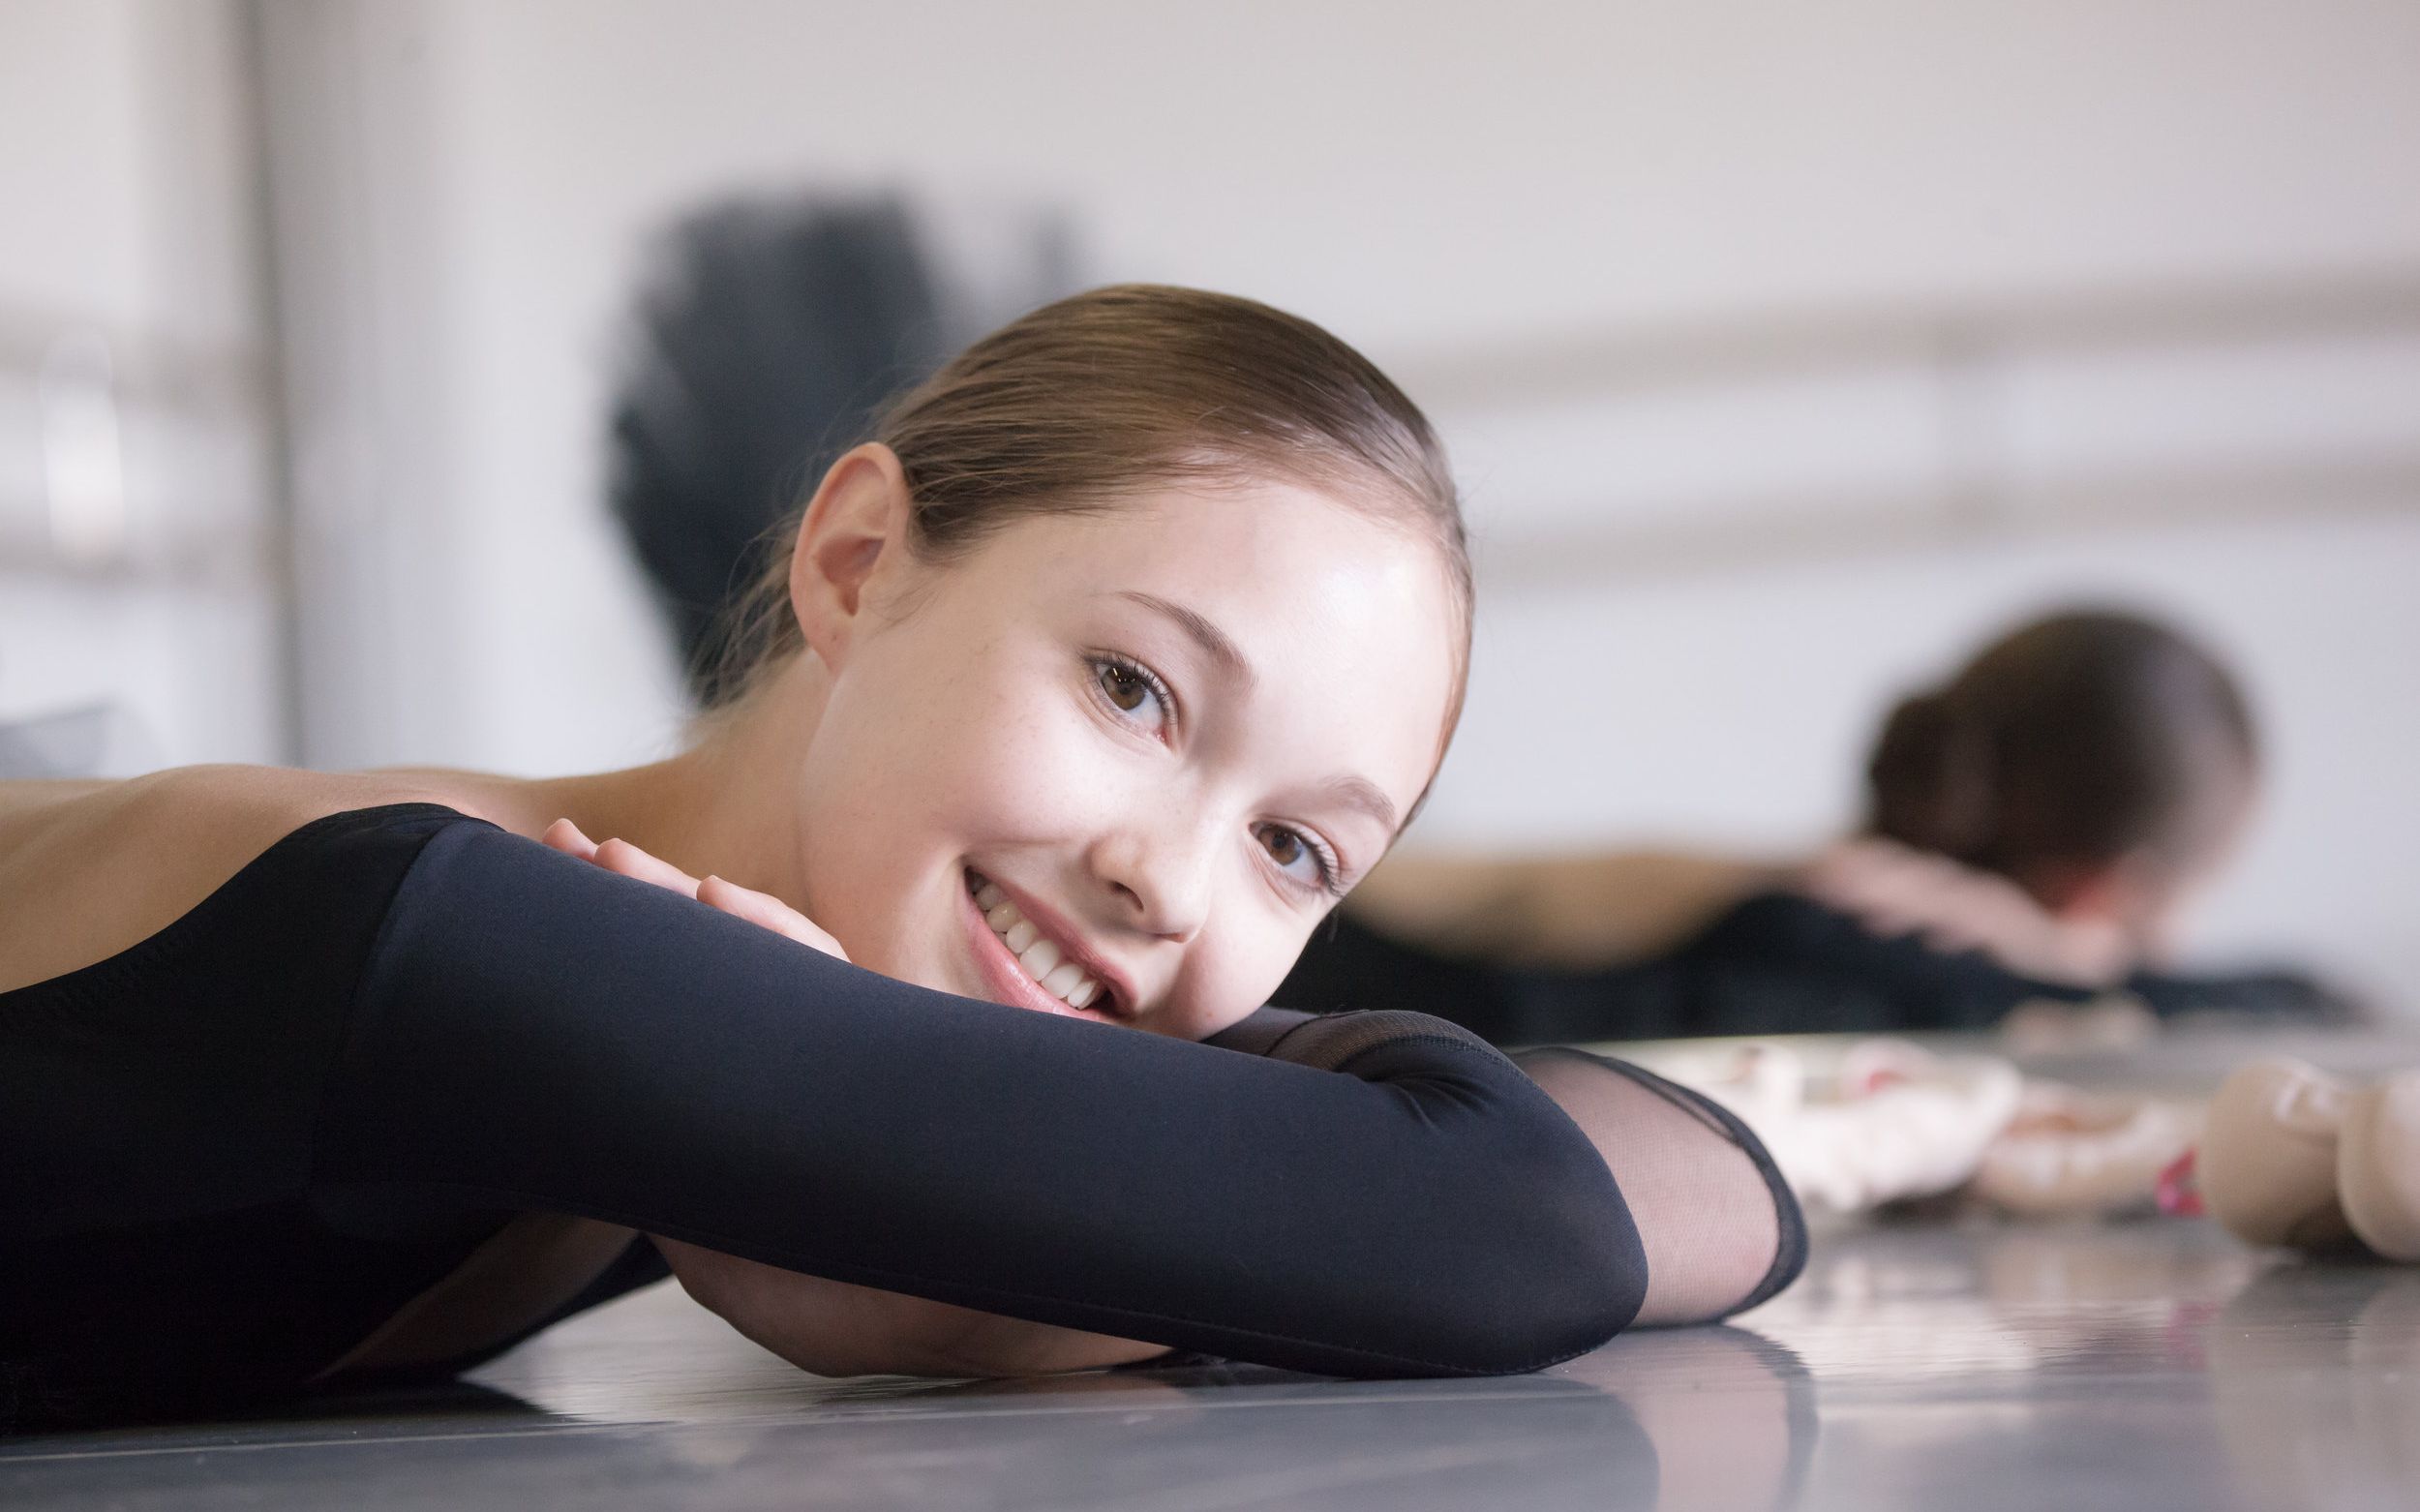 12岁可爱女生跳芭蕾图片